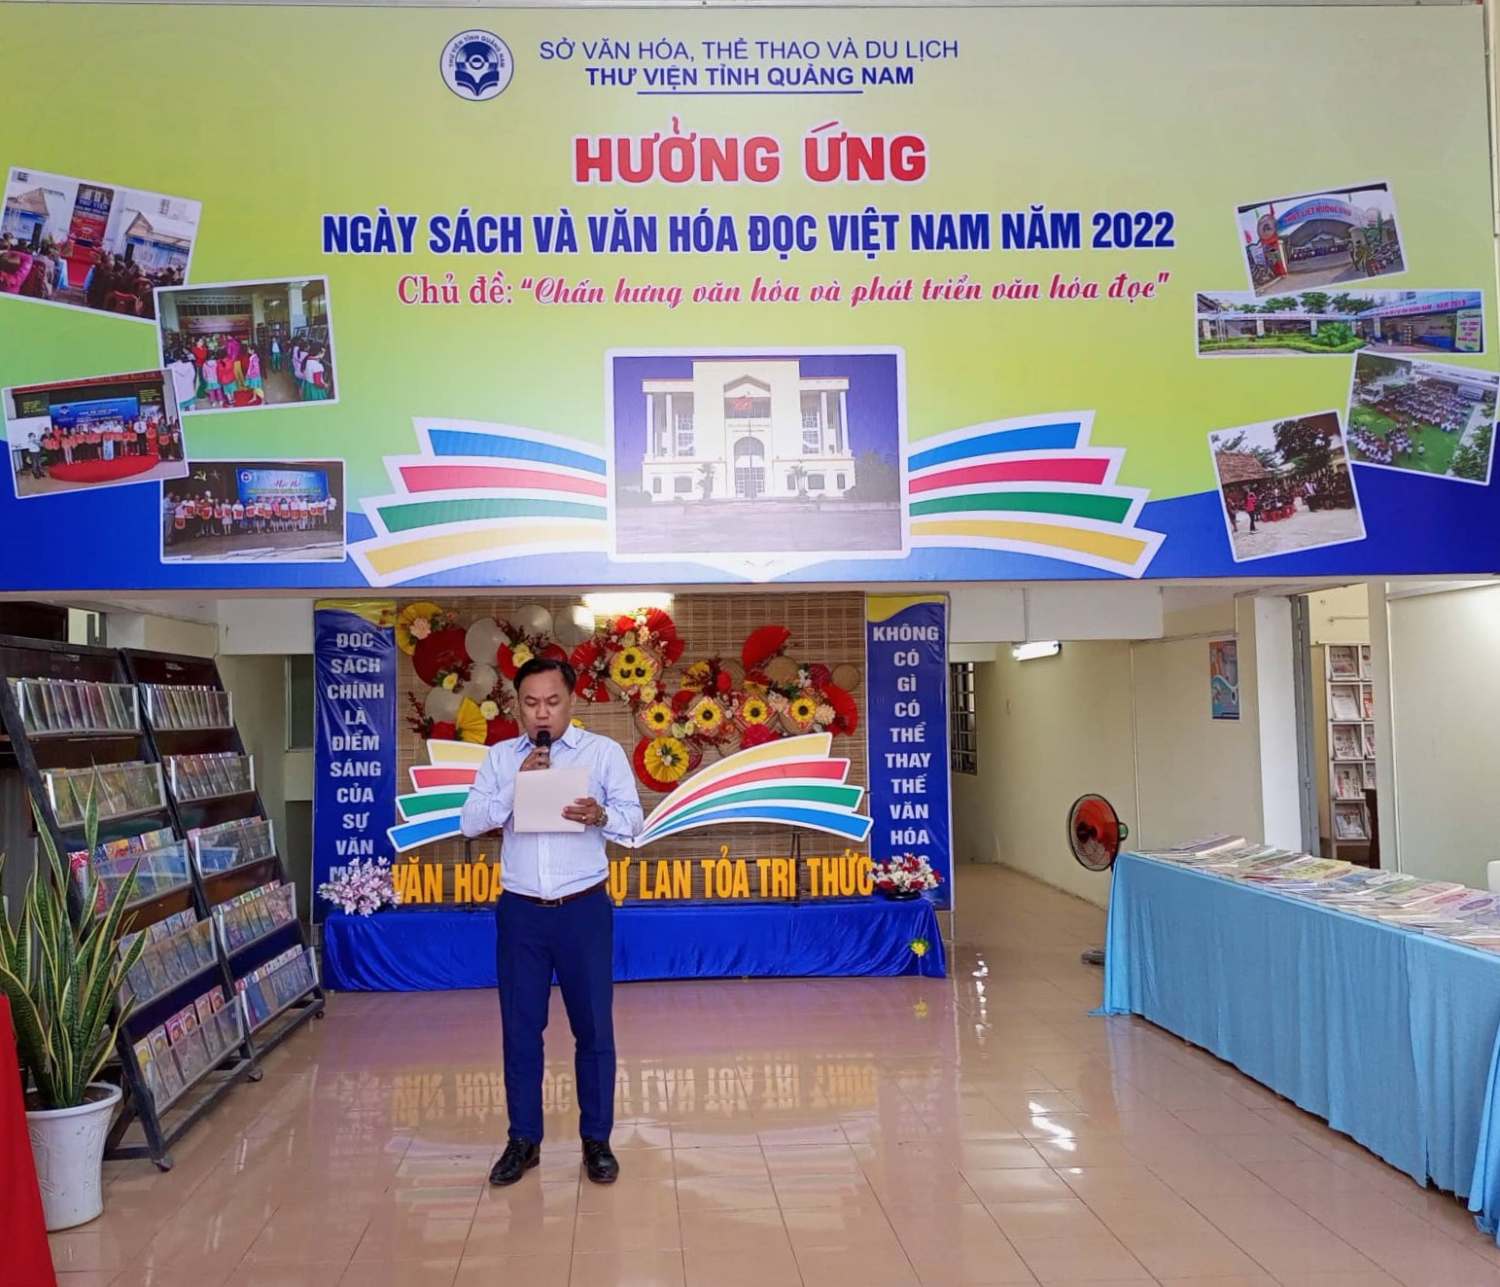 Ông La Đình Nghĩa - Giám đốc Thư viện tỉnh Quảng NAm phát biểu khai mạc hoạt động